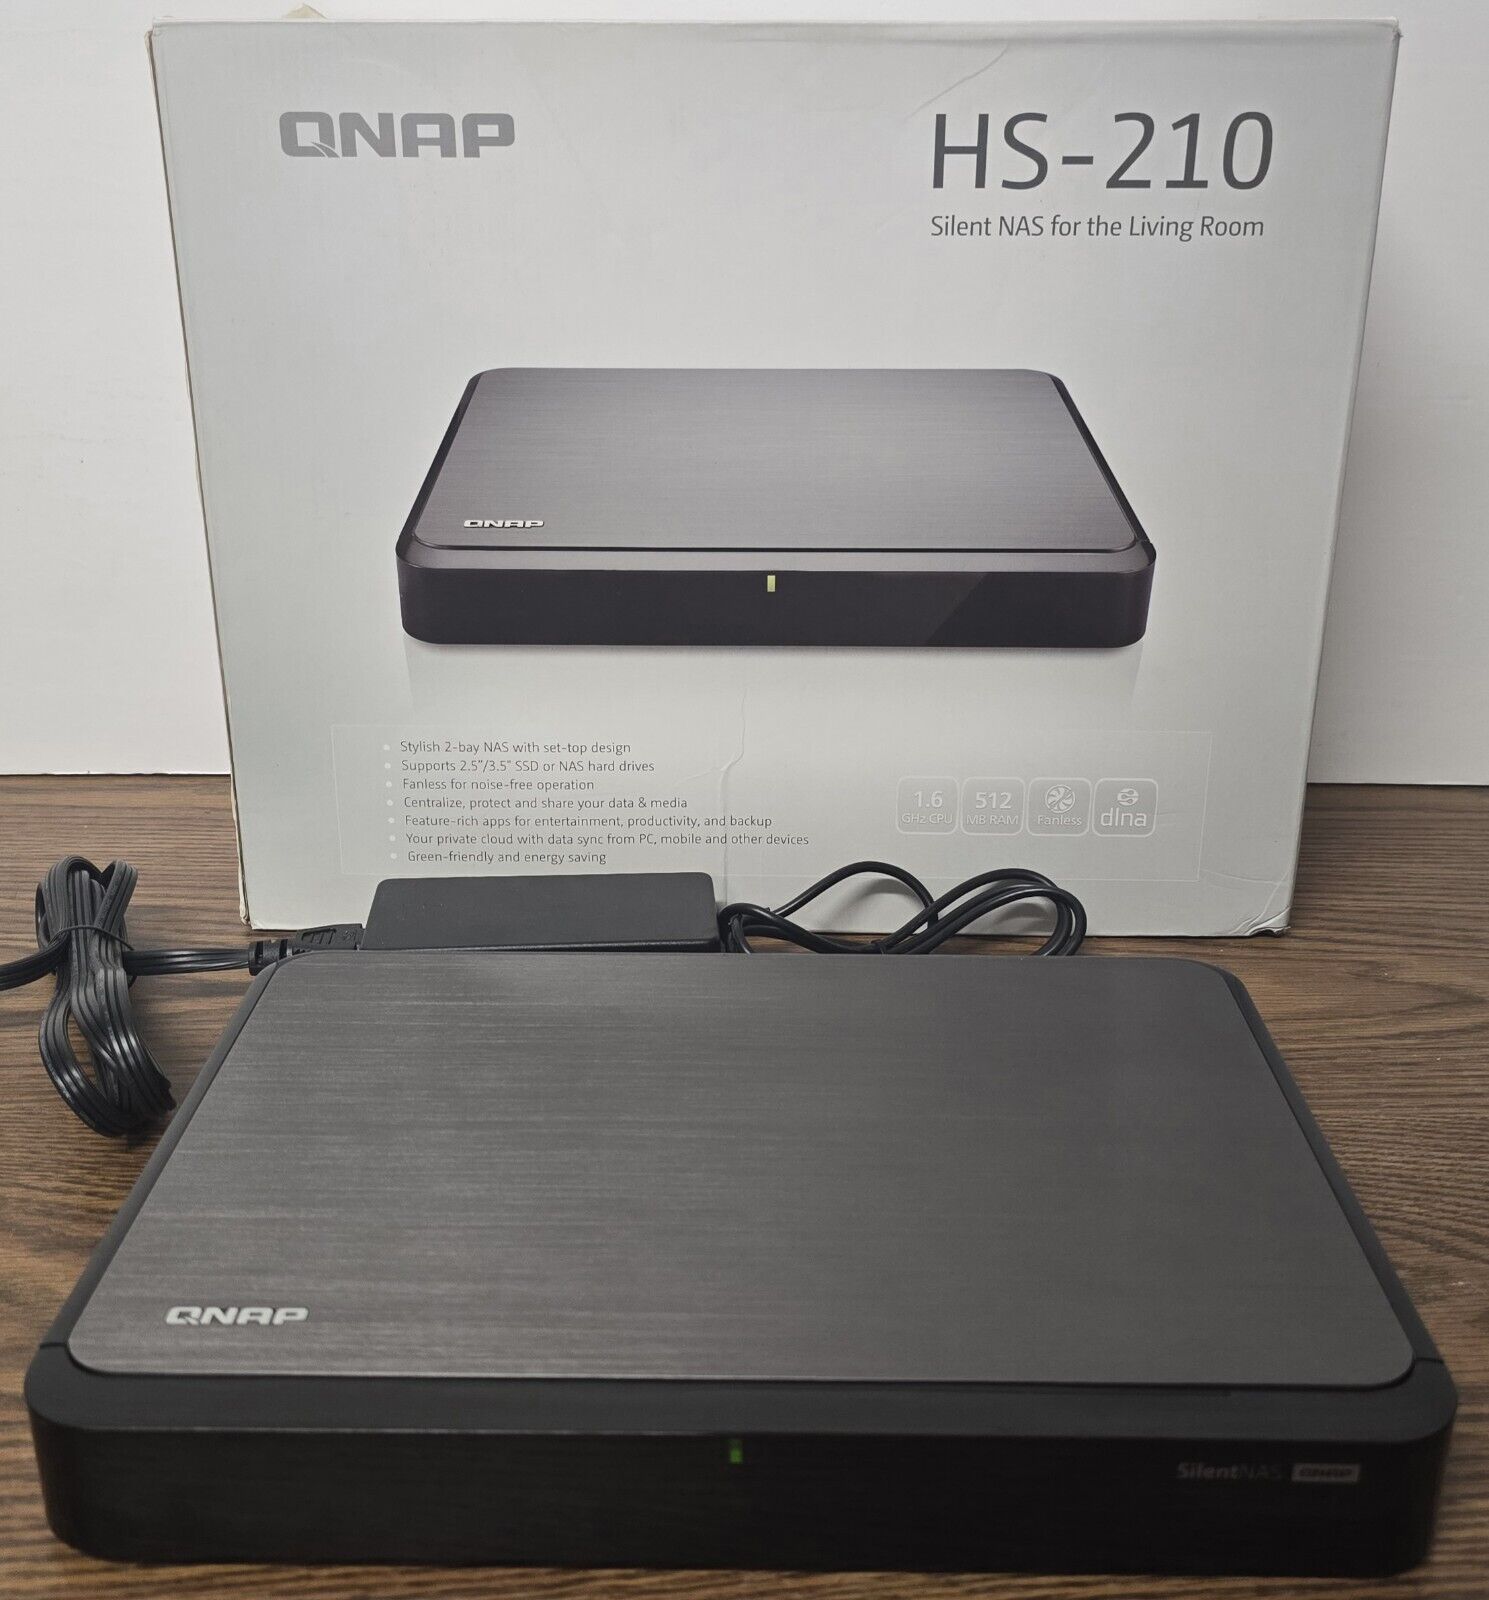 QNAP HS-210 Silent NAS 1.6GHz 512MB RAM 2 Bay + 2 x 3.0 TB Western Digital HDD